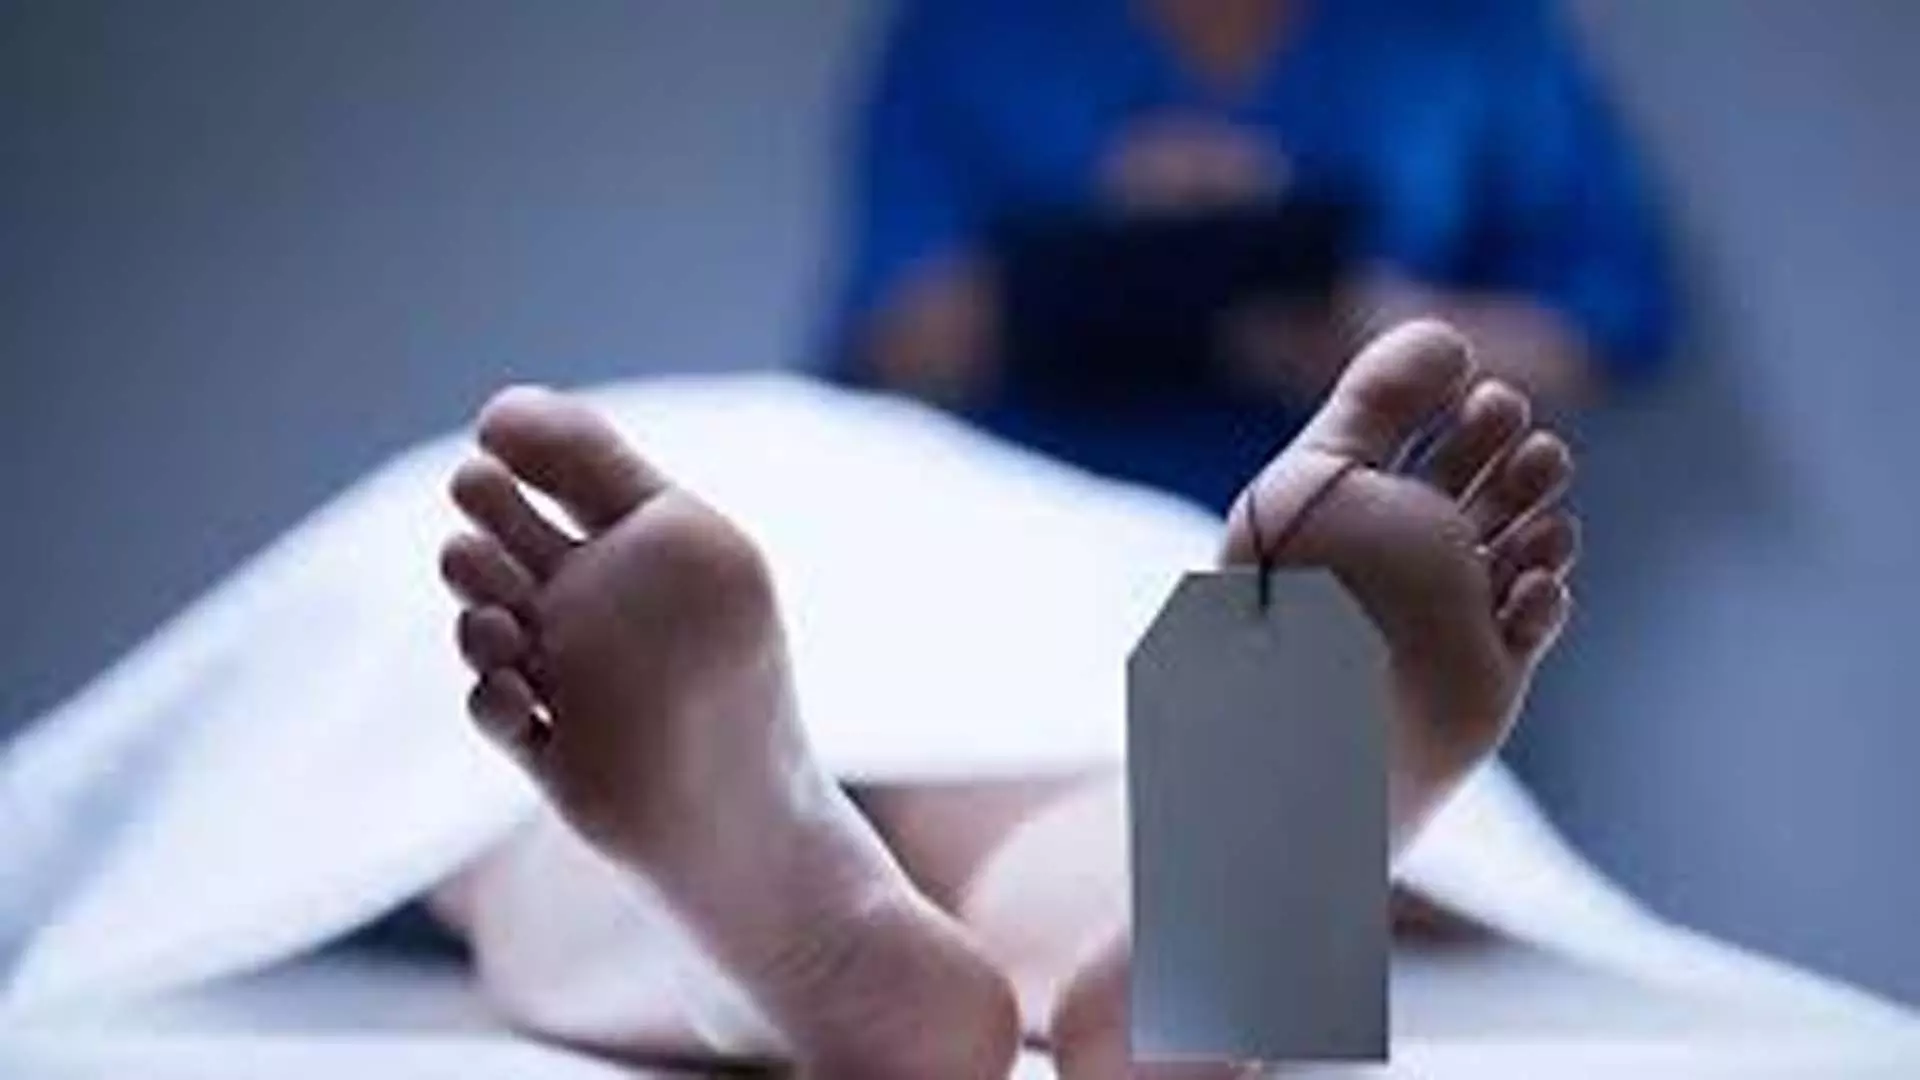 अस्पताल परिसर में  कार से टक्कर लगने पर एक बुजुर्ग महिला की मौत